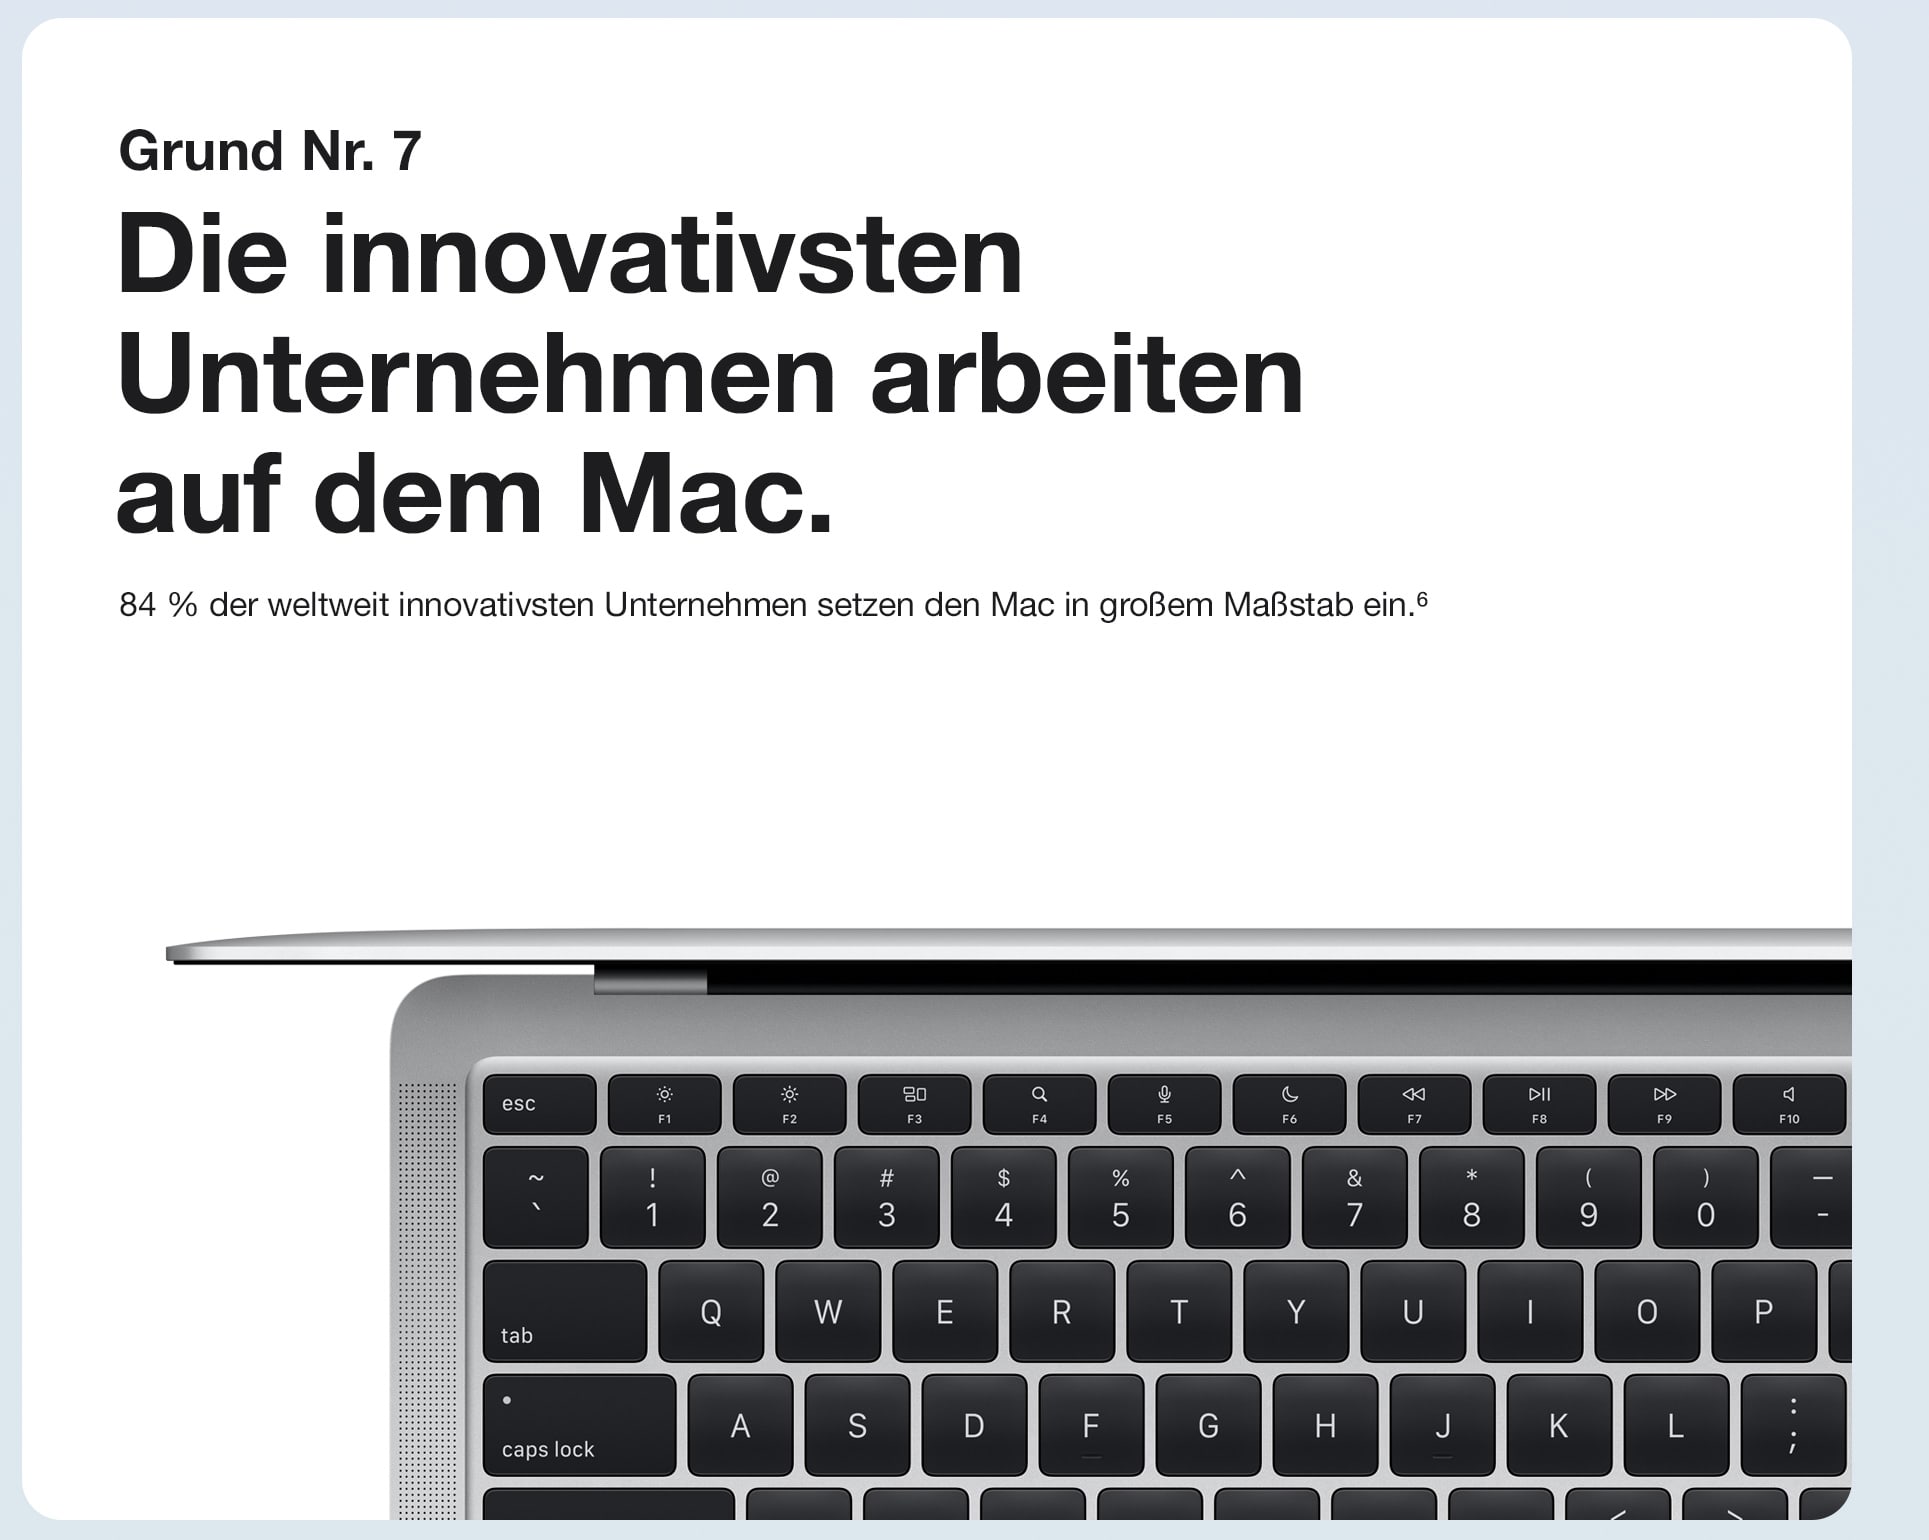 Die innovativsten Unternehmen arbeiten mit dem Mac.